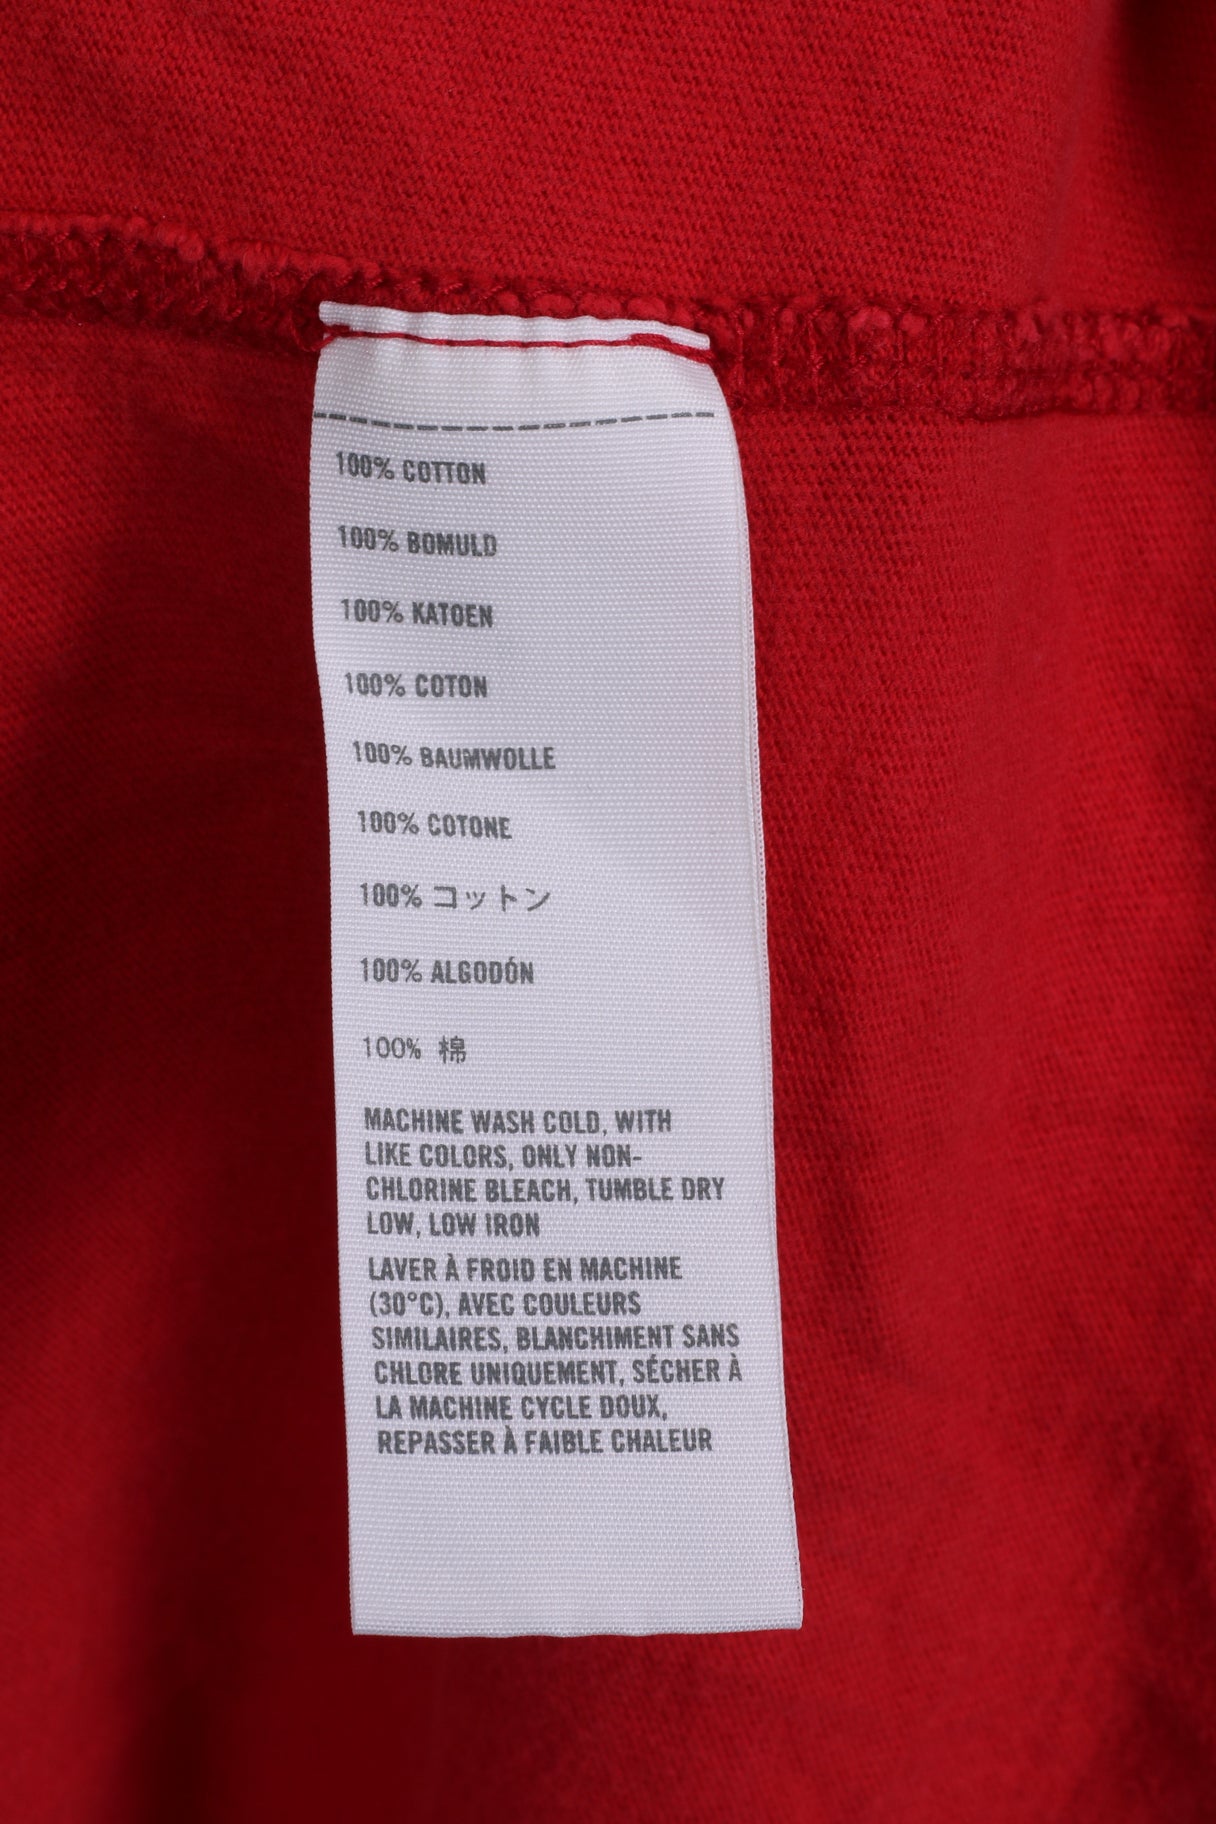 Camicia Hollister da uomo a maniche lunghe S in cotone rosso girocollo ricamato HCO